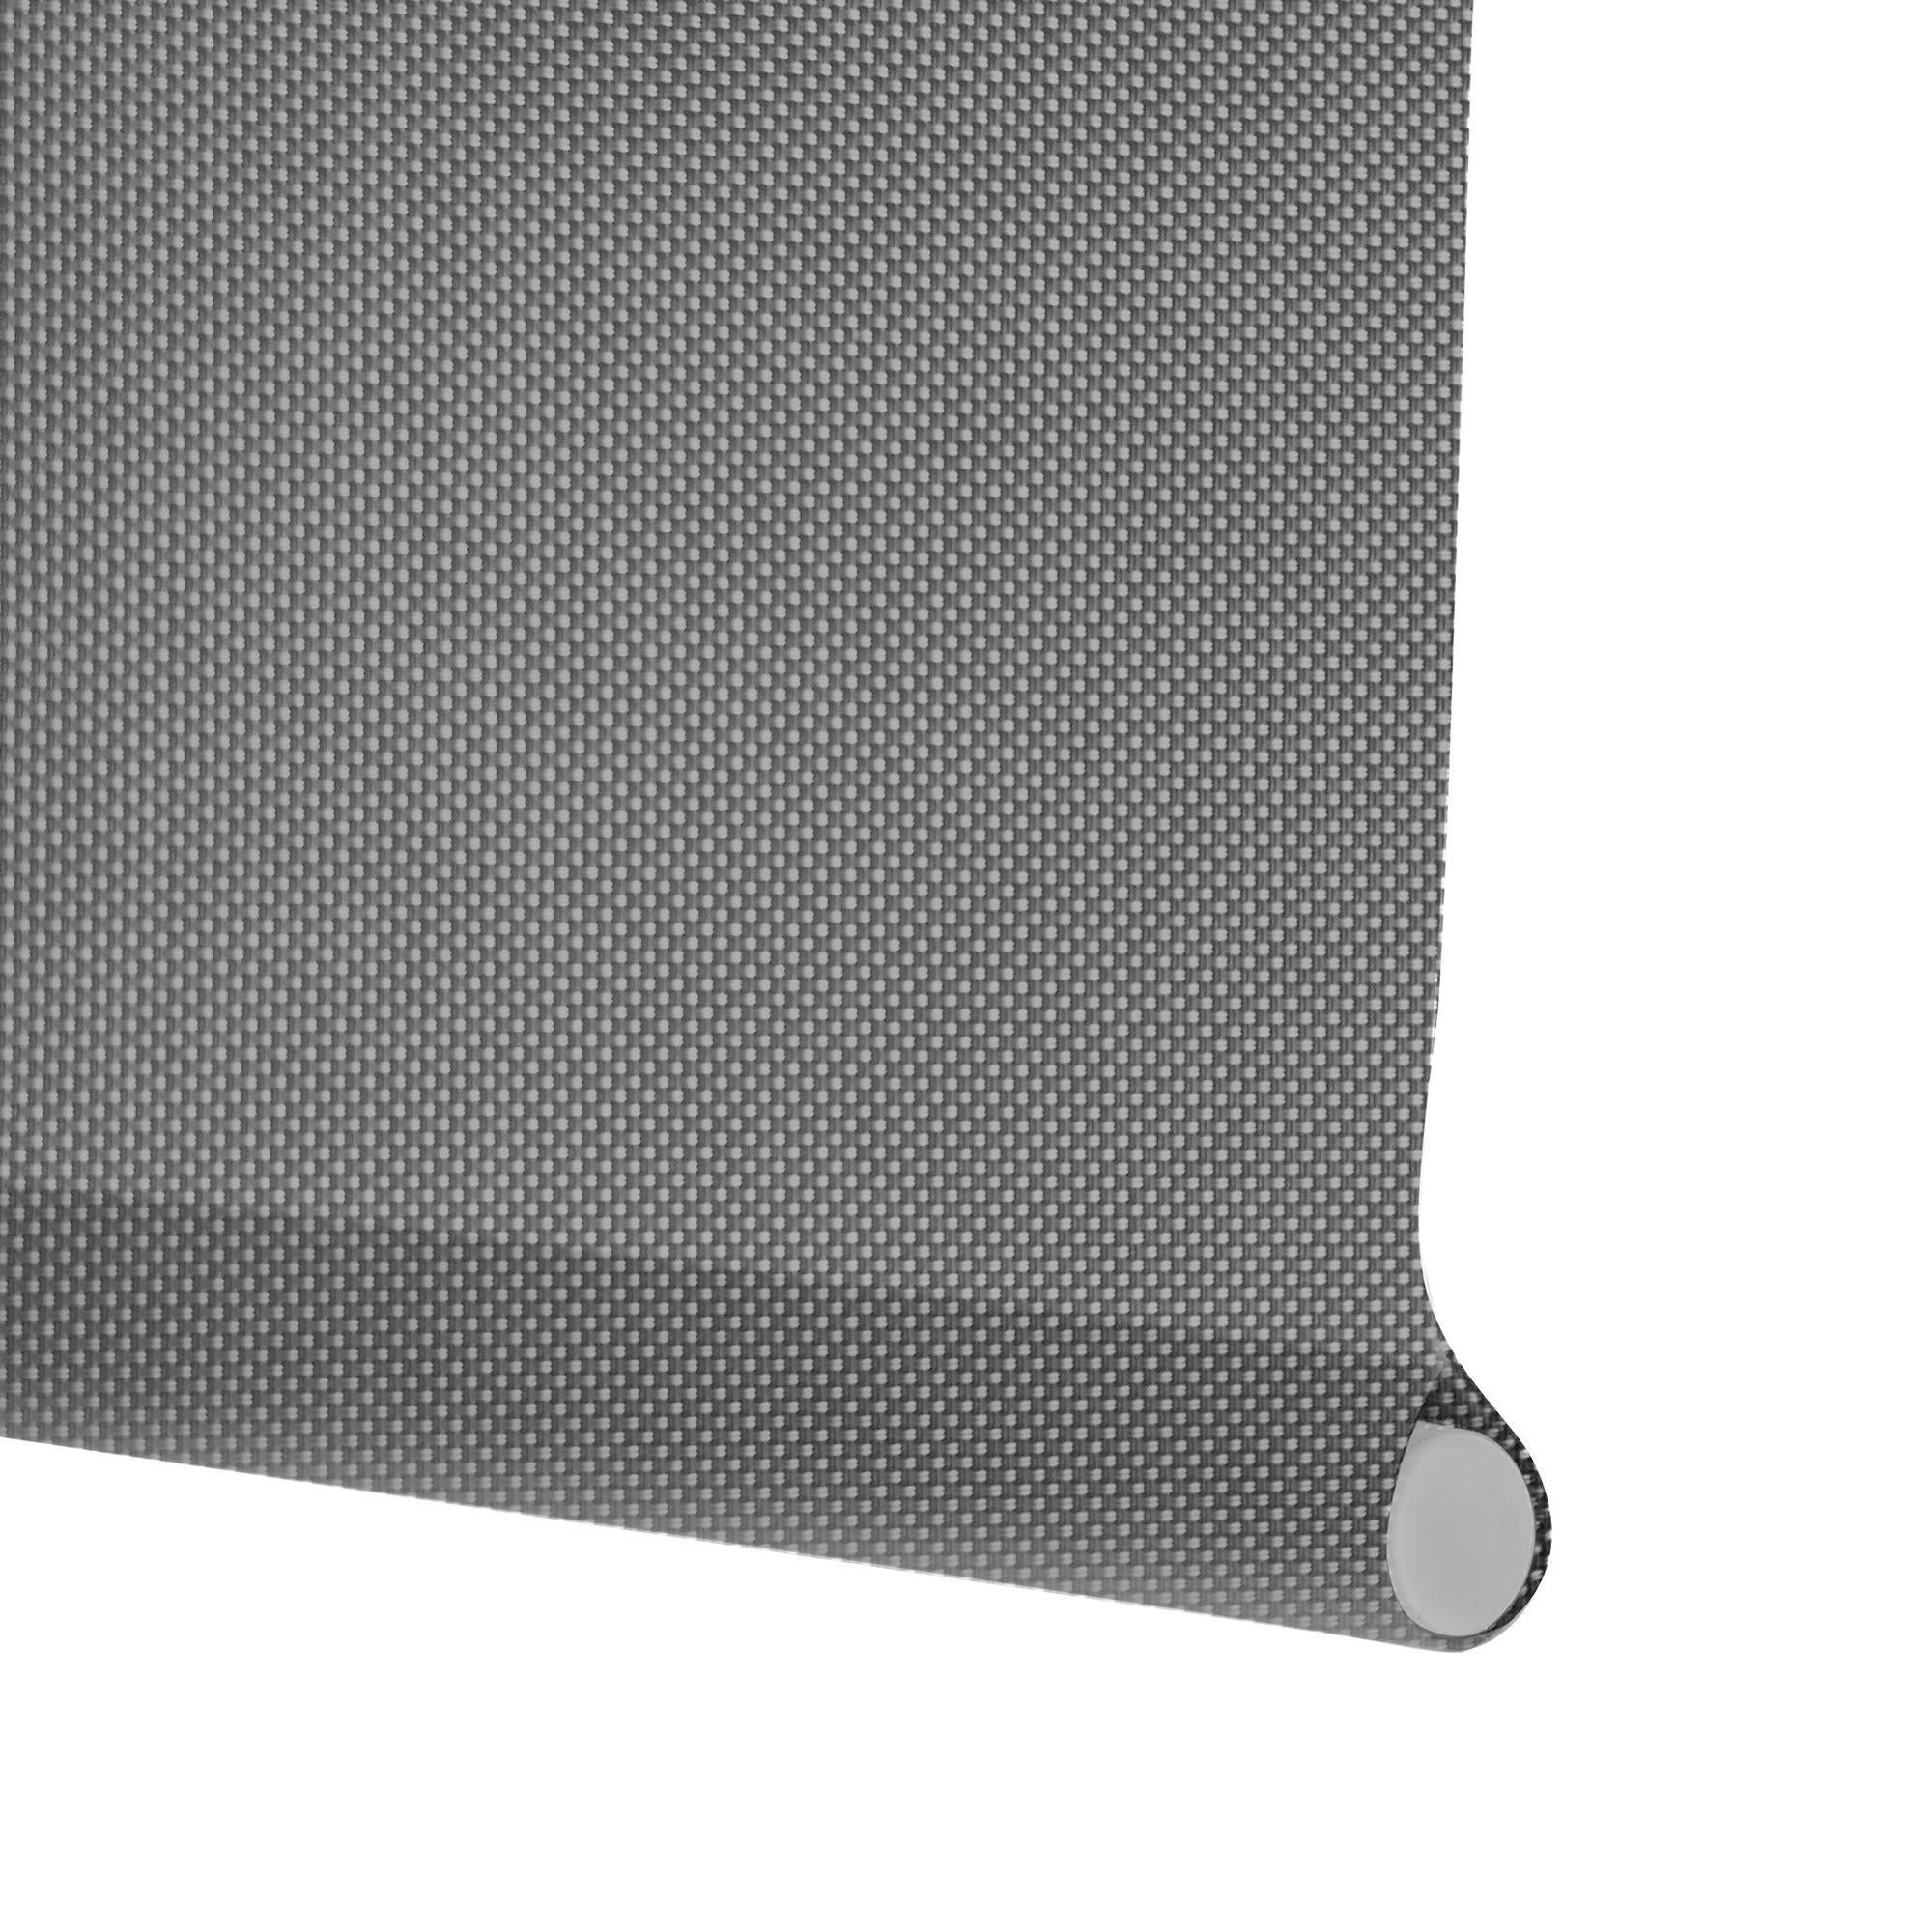 Tenda a rullo filtrante INSPIRE Screen grigio perla 200 x 250 cm - 2